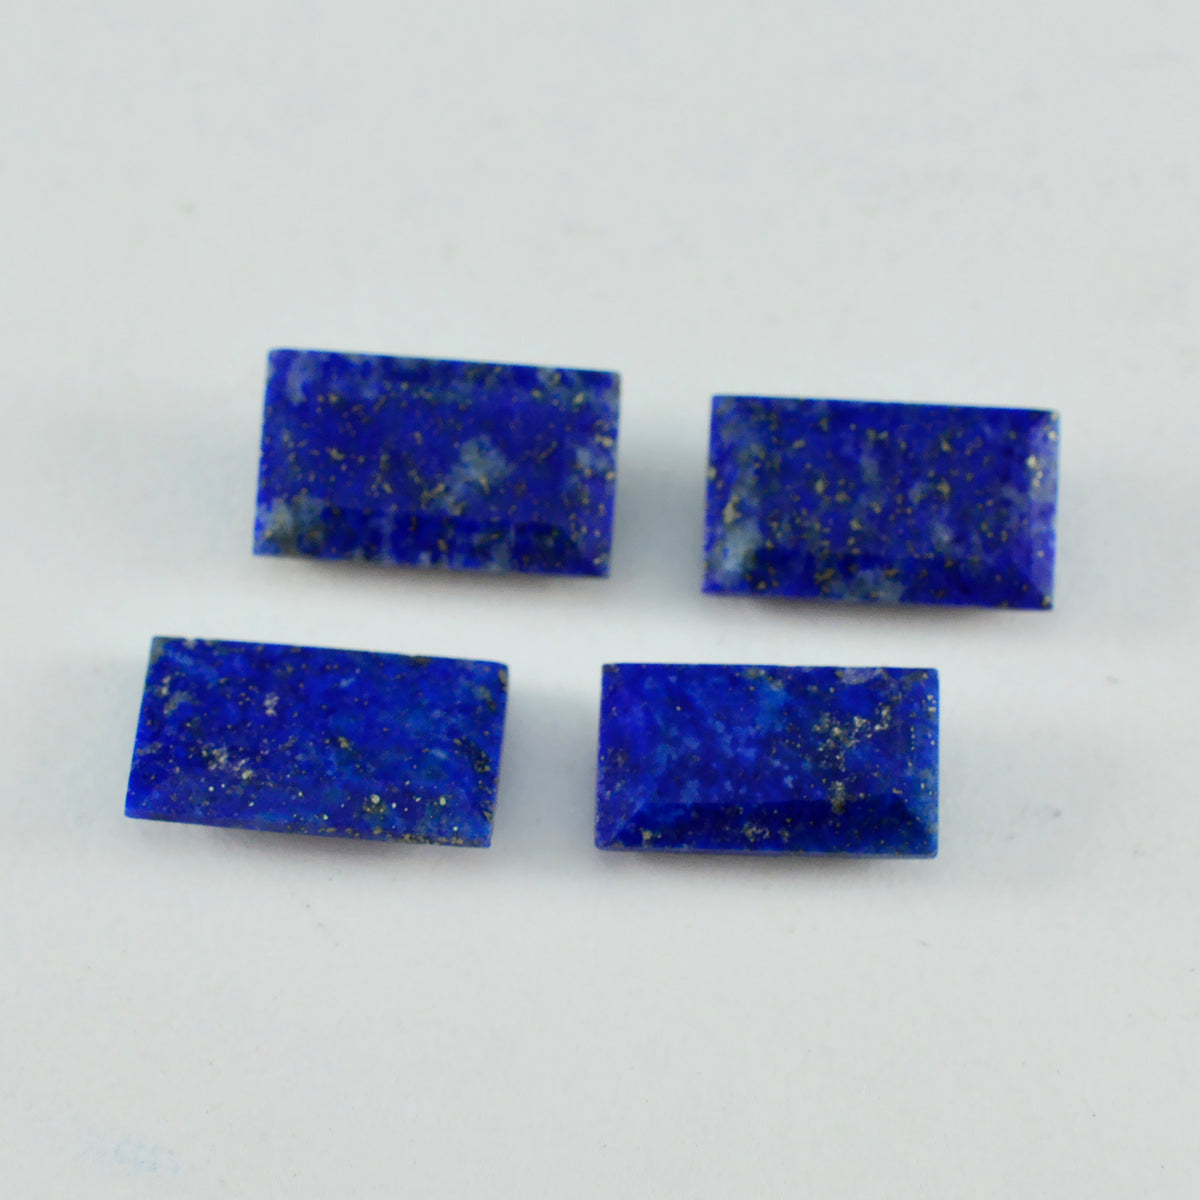 riyogems 1 шт. настоящий синий лазурит ограненный 7x14 мм в форме багета замечательный качественный камень